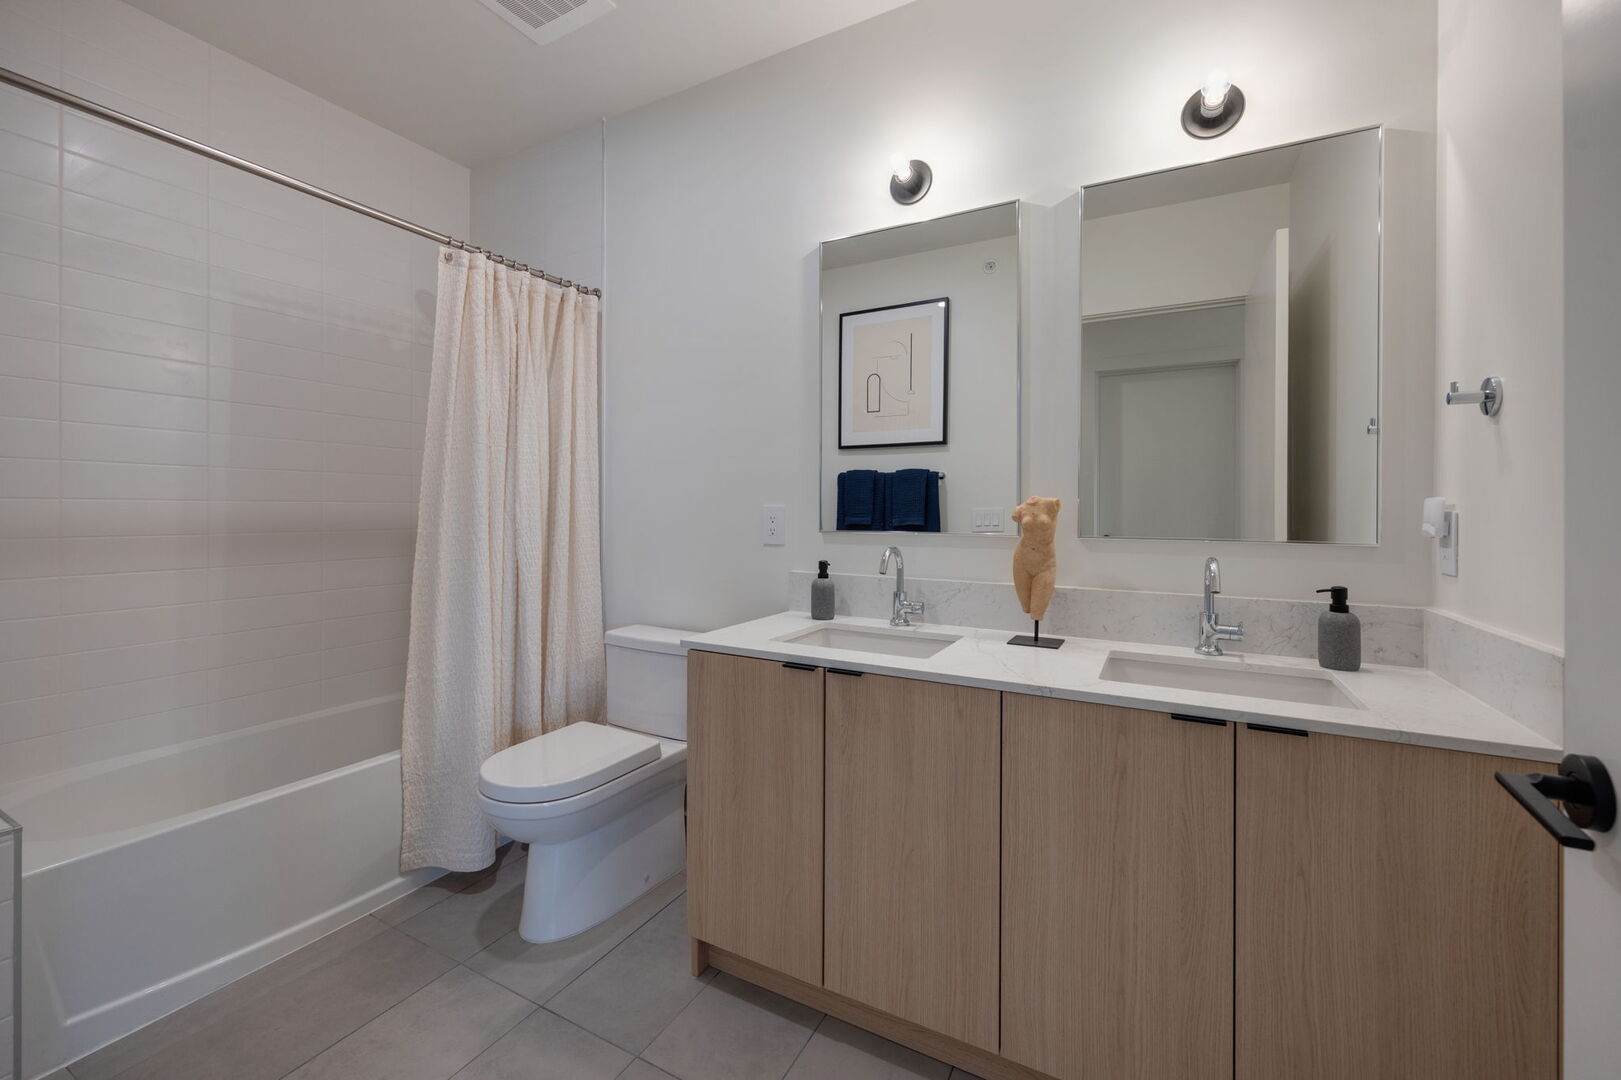 Upper Level: Primary bathroom with en-suite bedroom, shower/tub combo, and double vanities.